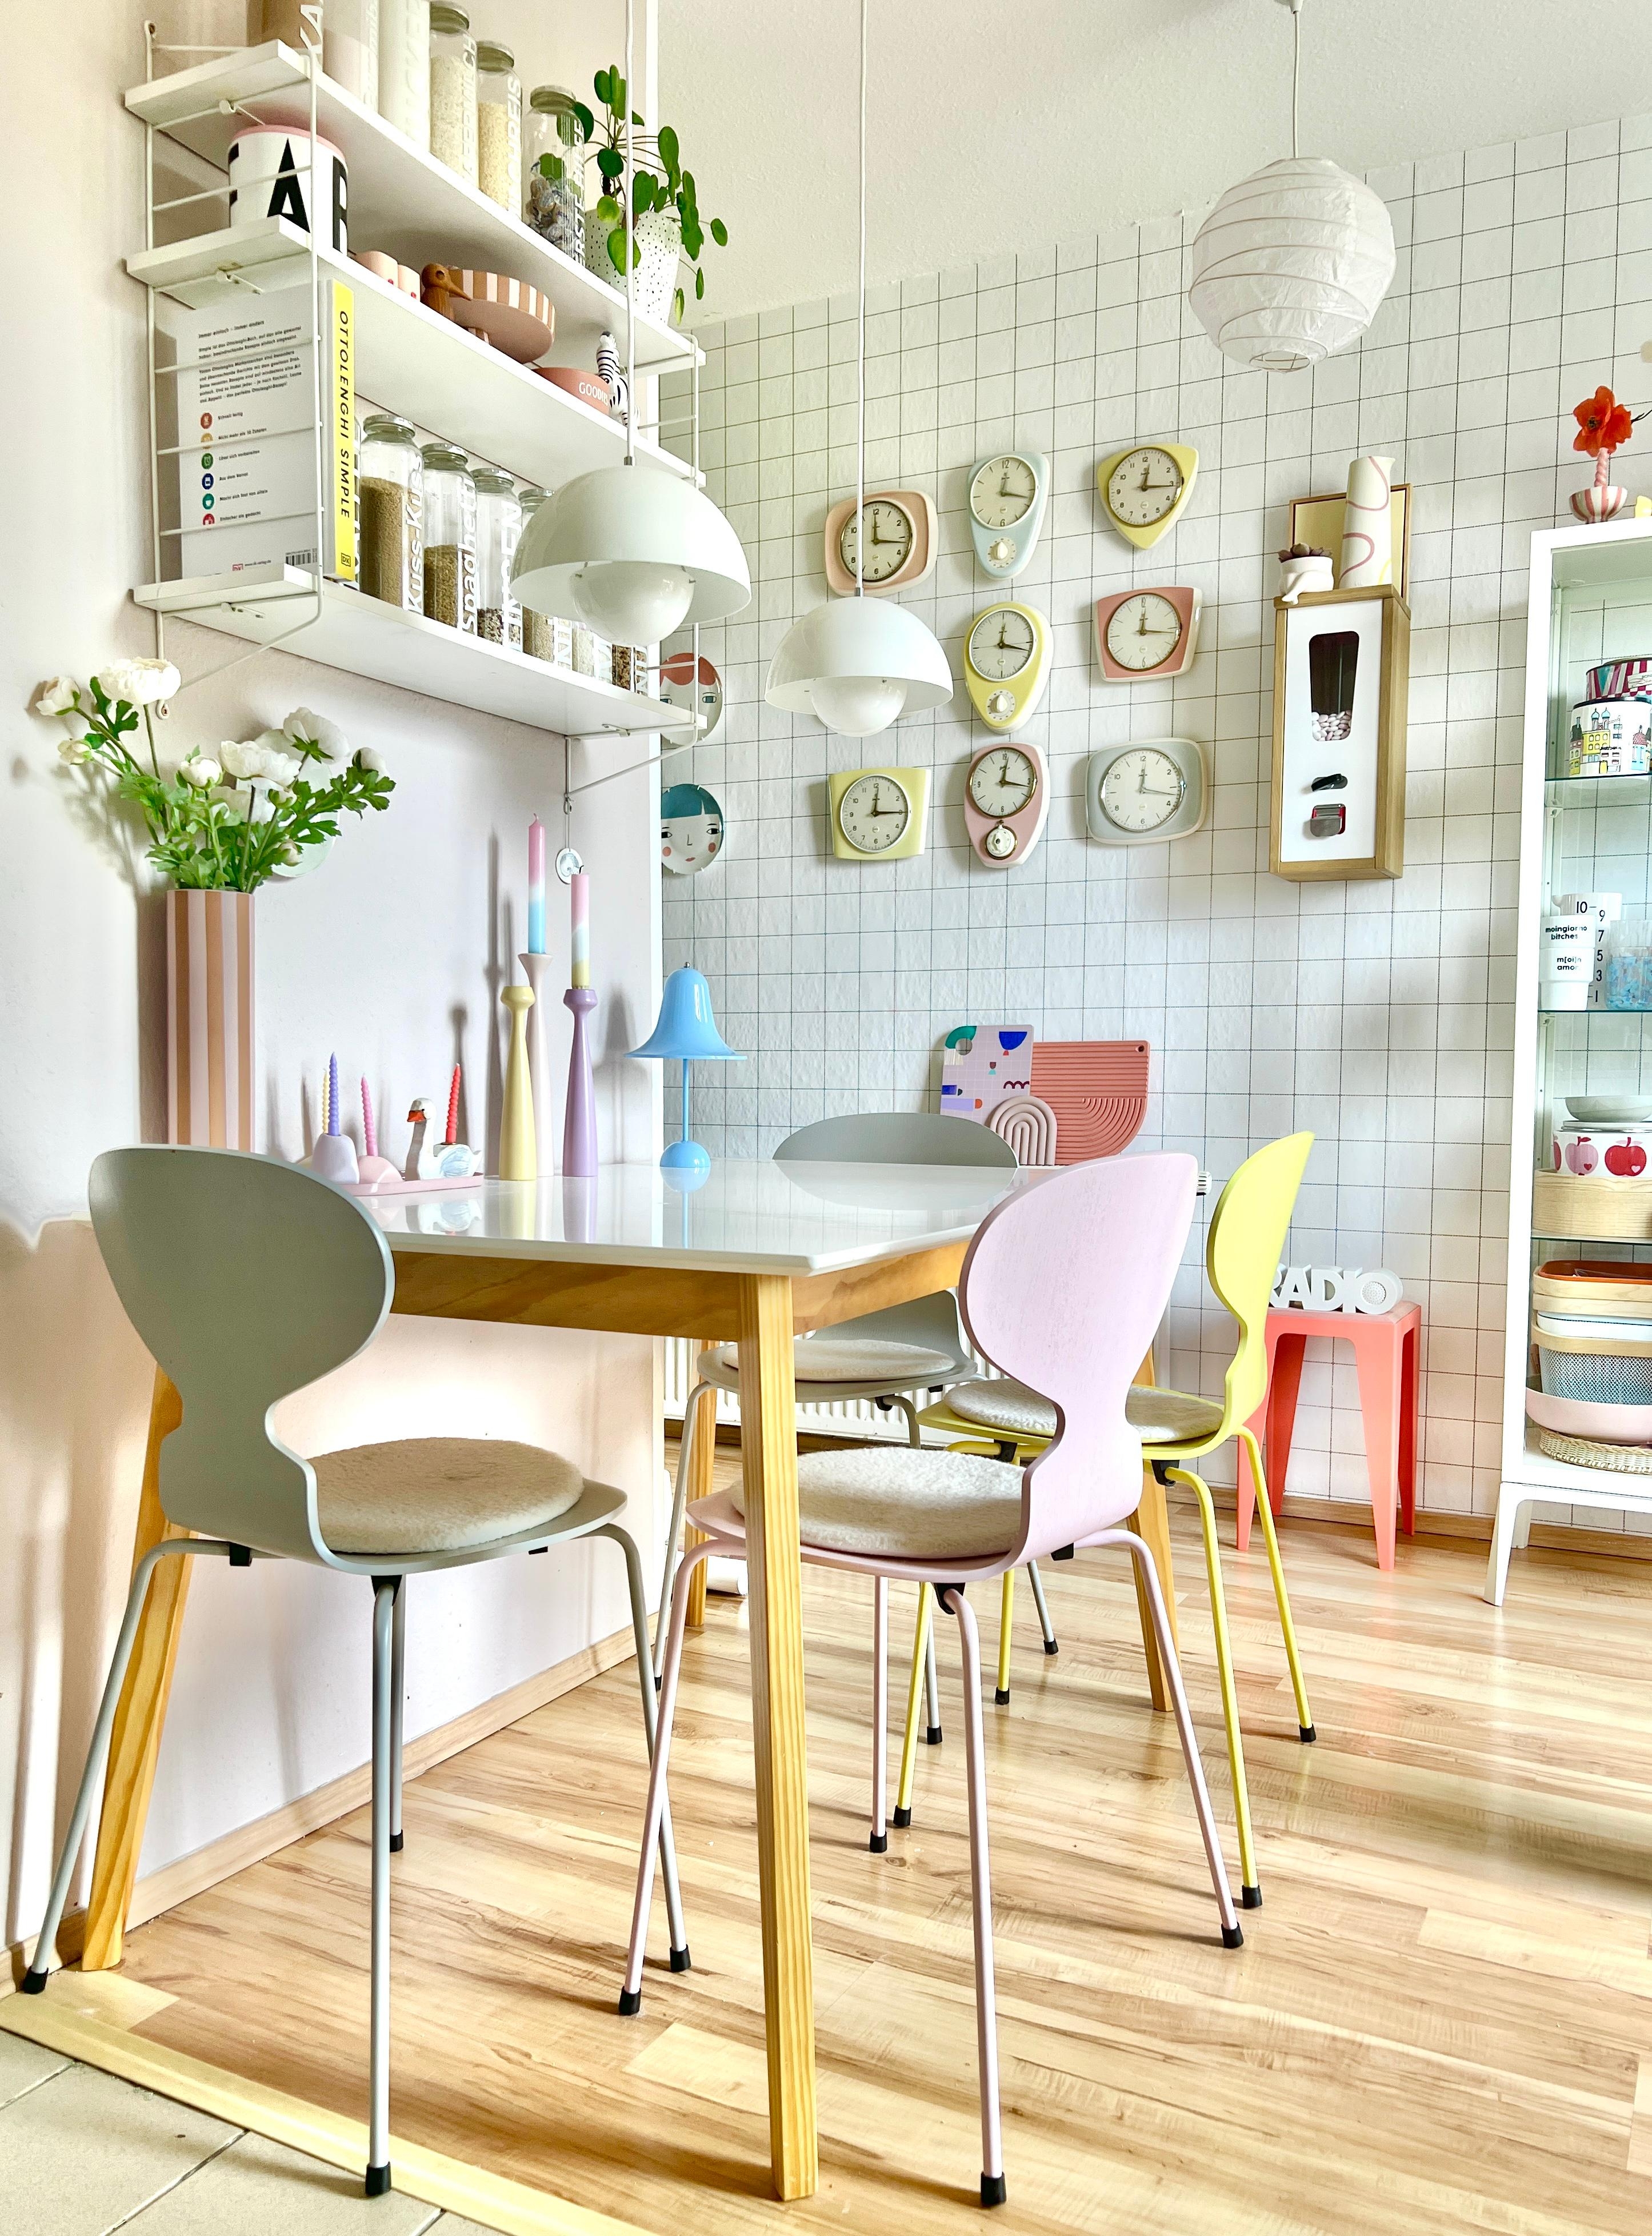 #interior #interiordesign #couchliebt #küche #pastell #rosa #midcentury #fritzhansen #ameisenstuhl #vintage #flowerpot 